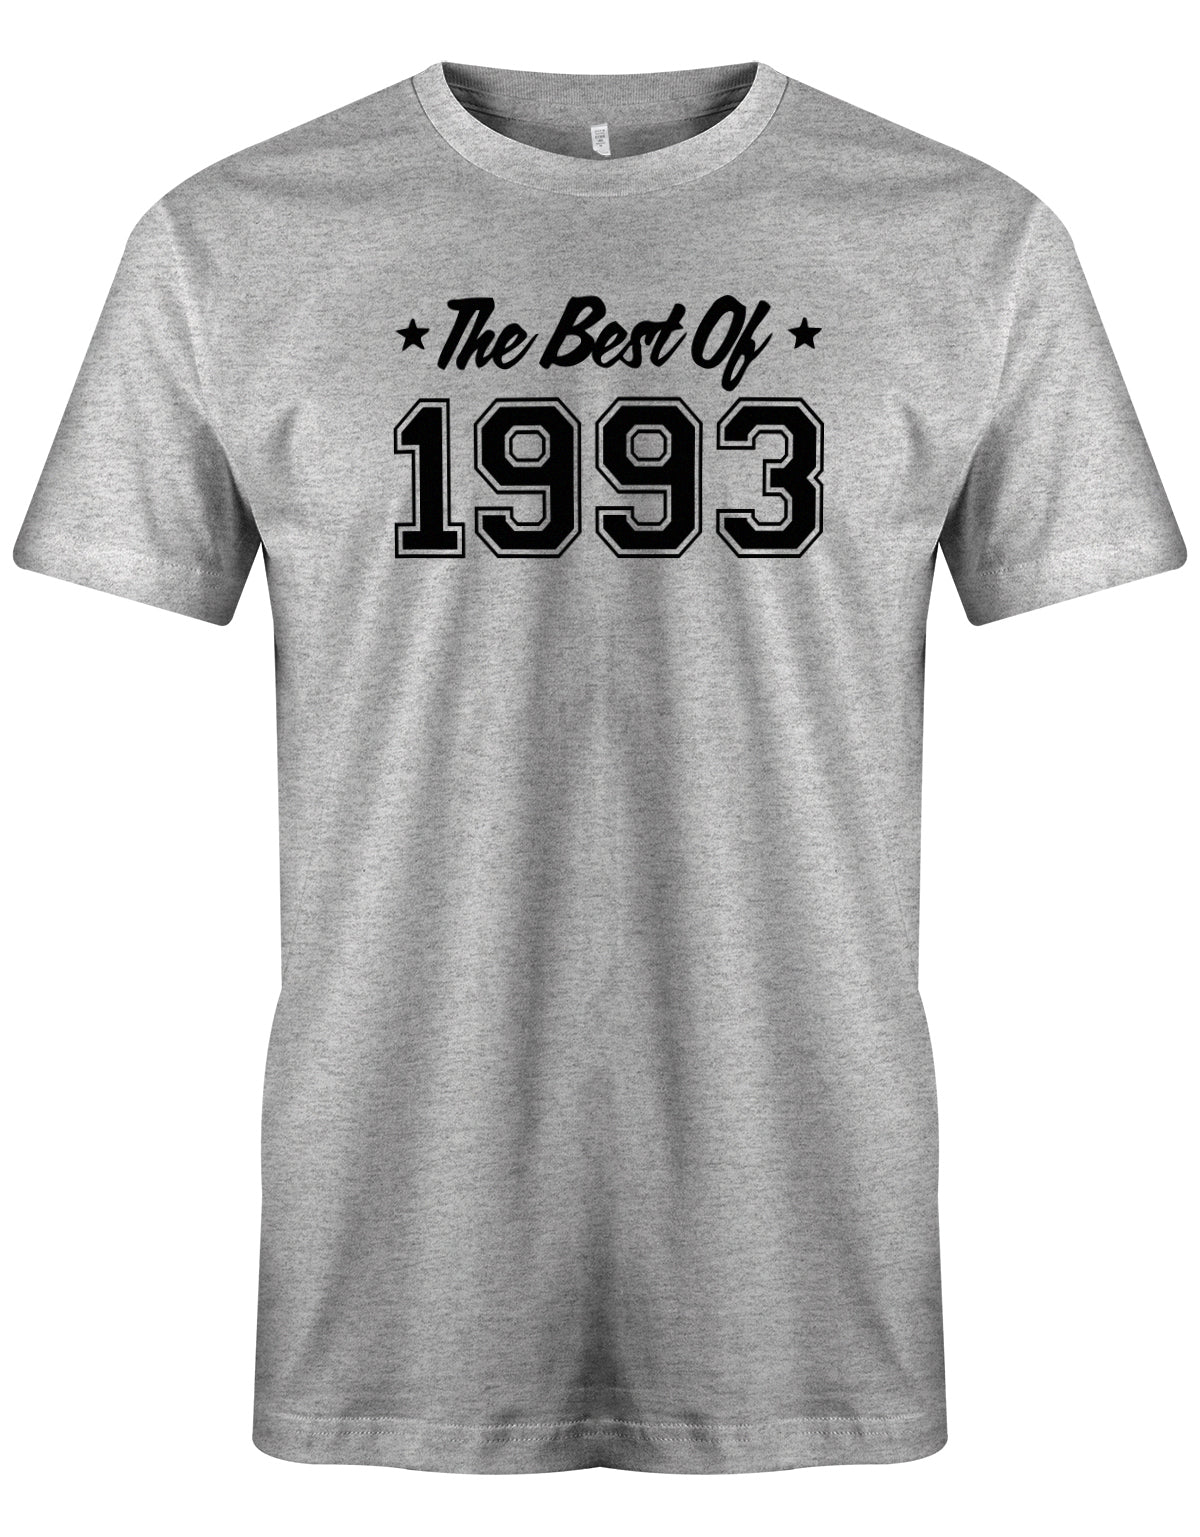 Cooles T-Shirt zum 30 Geburtstag für den Mann Bedruckt mit: The best of 1993 - das beste aus 1993. Das 30 Geburtstag Männer Shirt Lustig ist eine super Geschenkidee für alle 30 Jährigen. Man wird nur einmal 30 Jahre. 30 geburtstag Männer Shirt ✓ 1993 geburtstag shirt ✓ t-shirt zum 30 geburtstag mann ✓ shirt 30 mann Grau